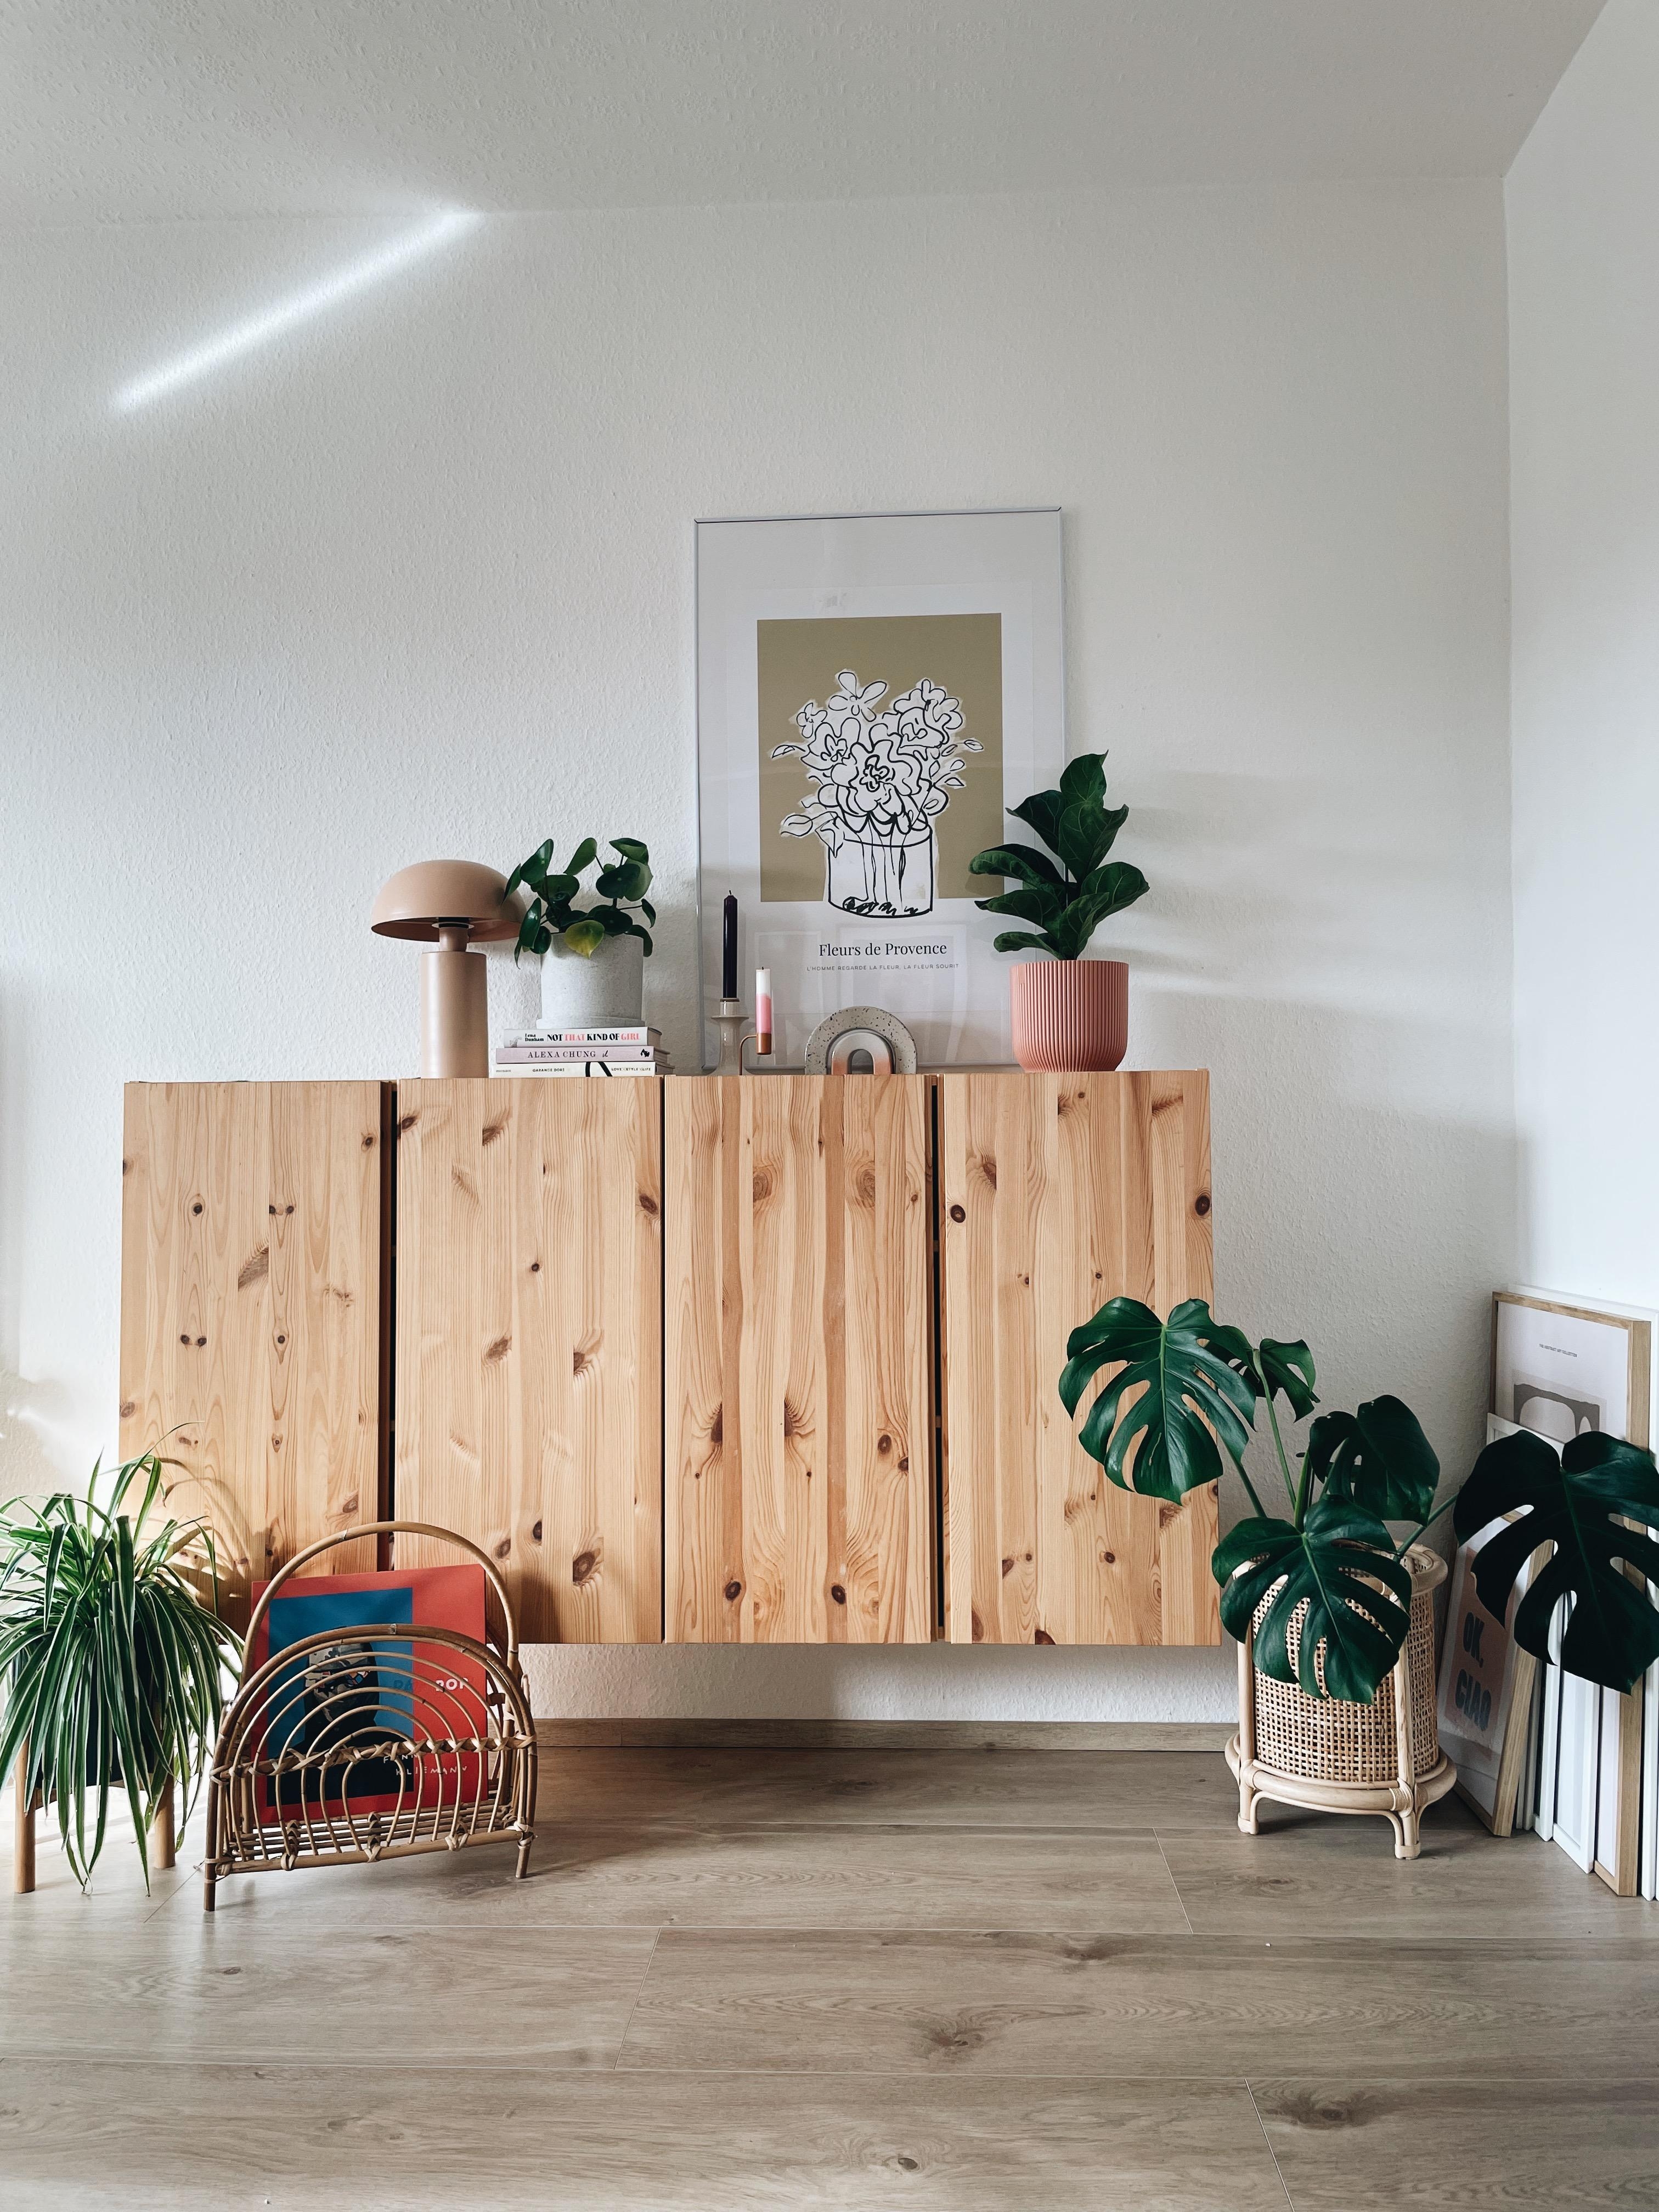 🪴#wohnzimmer #livingroom #plants #inspiration #couchliebt #ivar #neutrals 